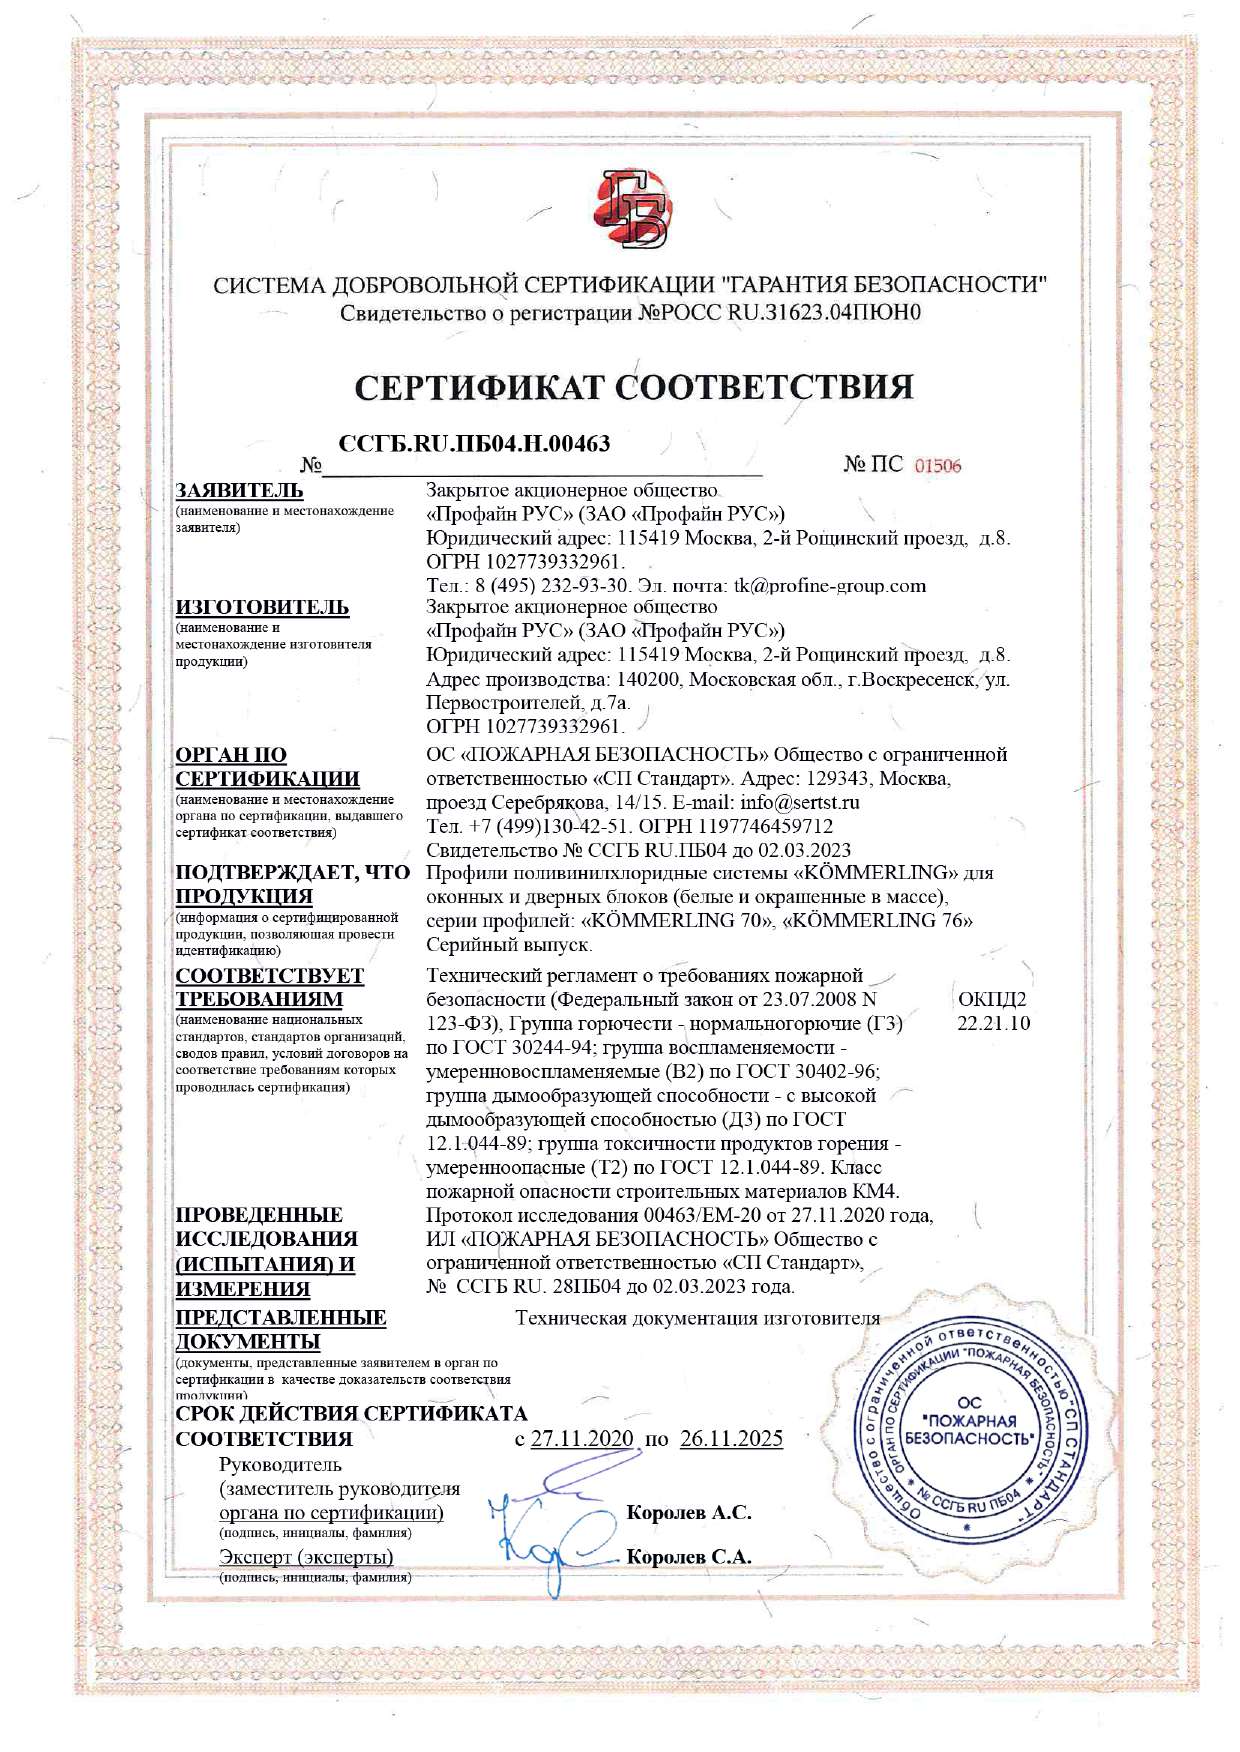 Kömmerling, пожарный сертификат, 26.11.2025